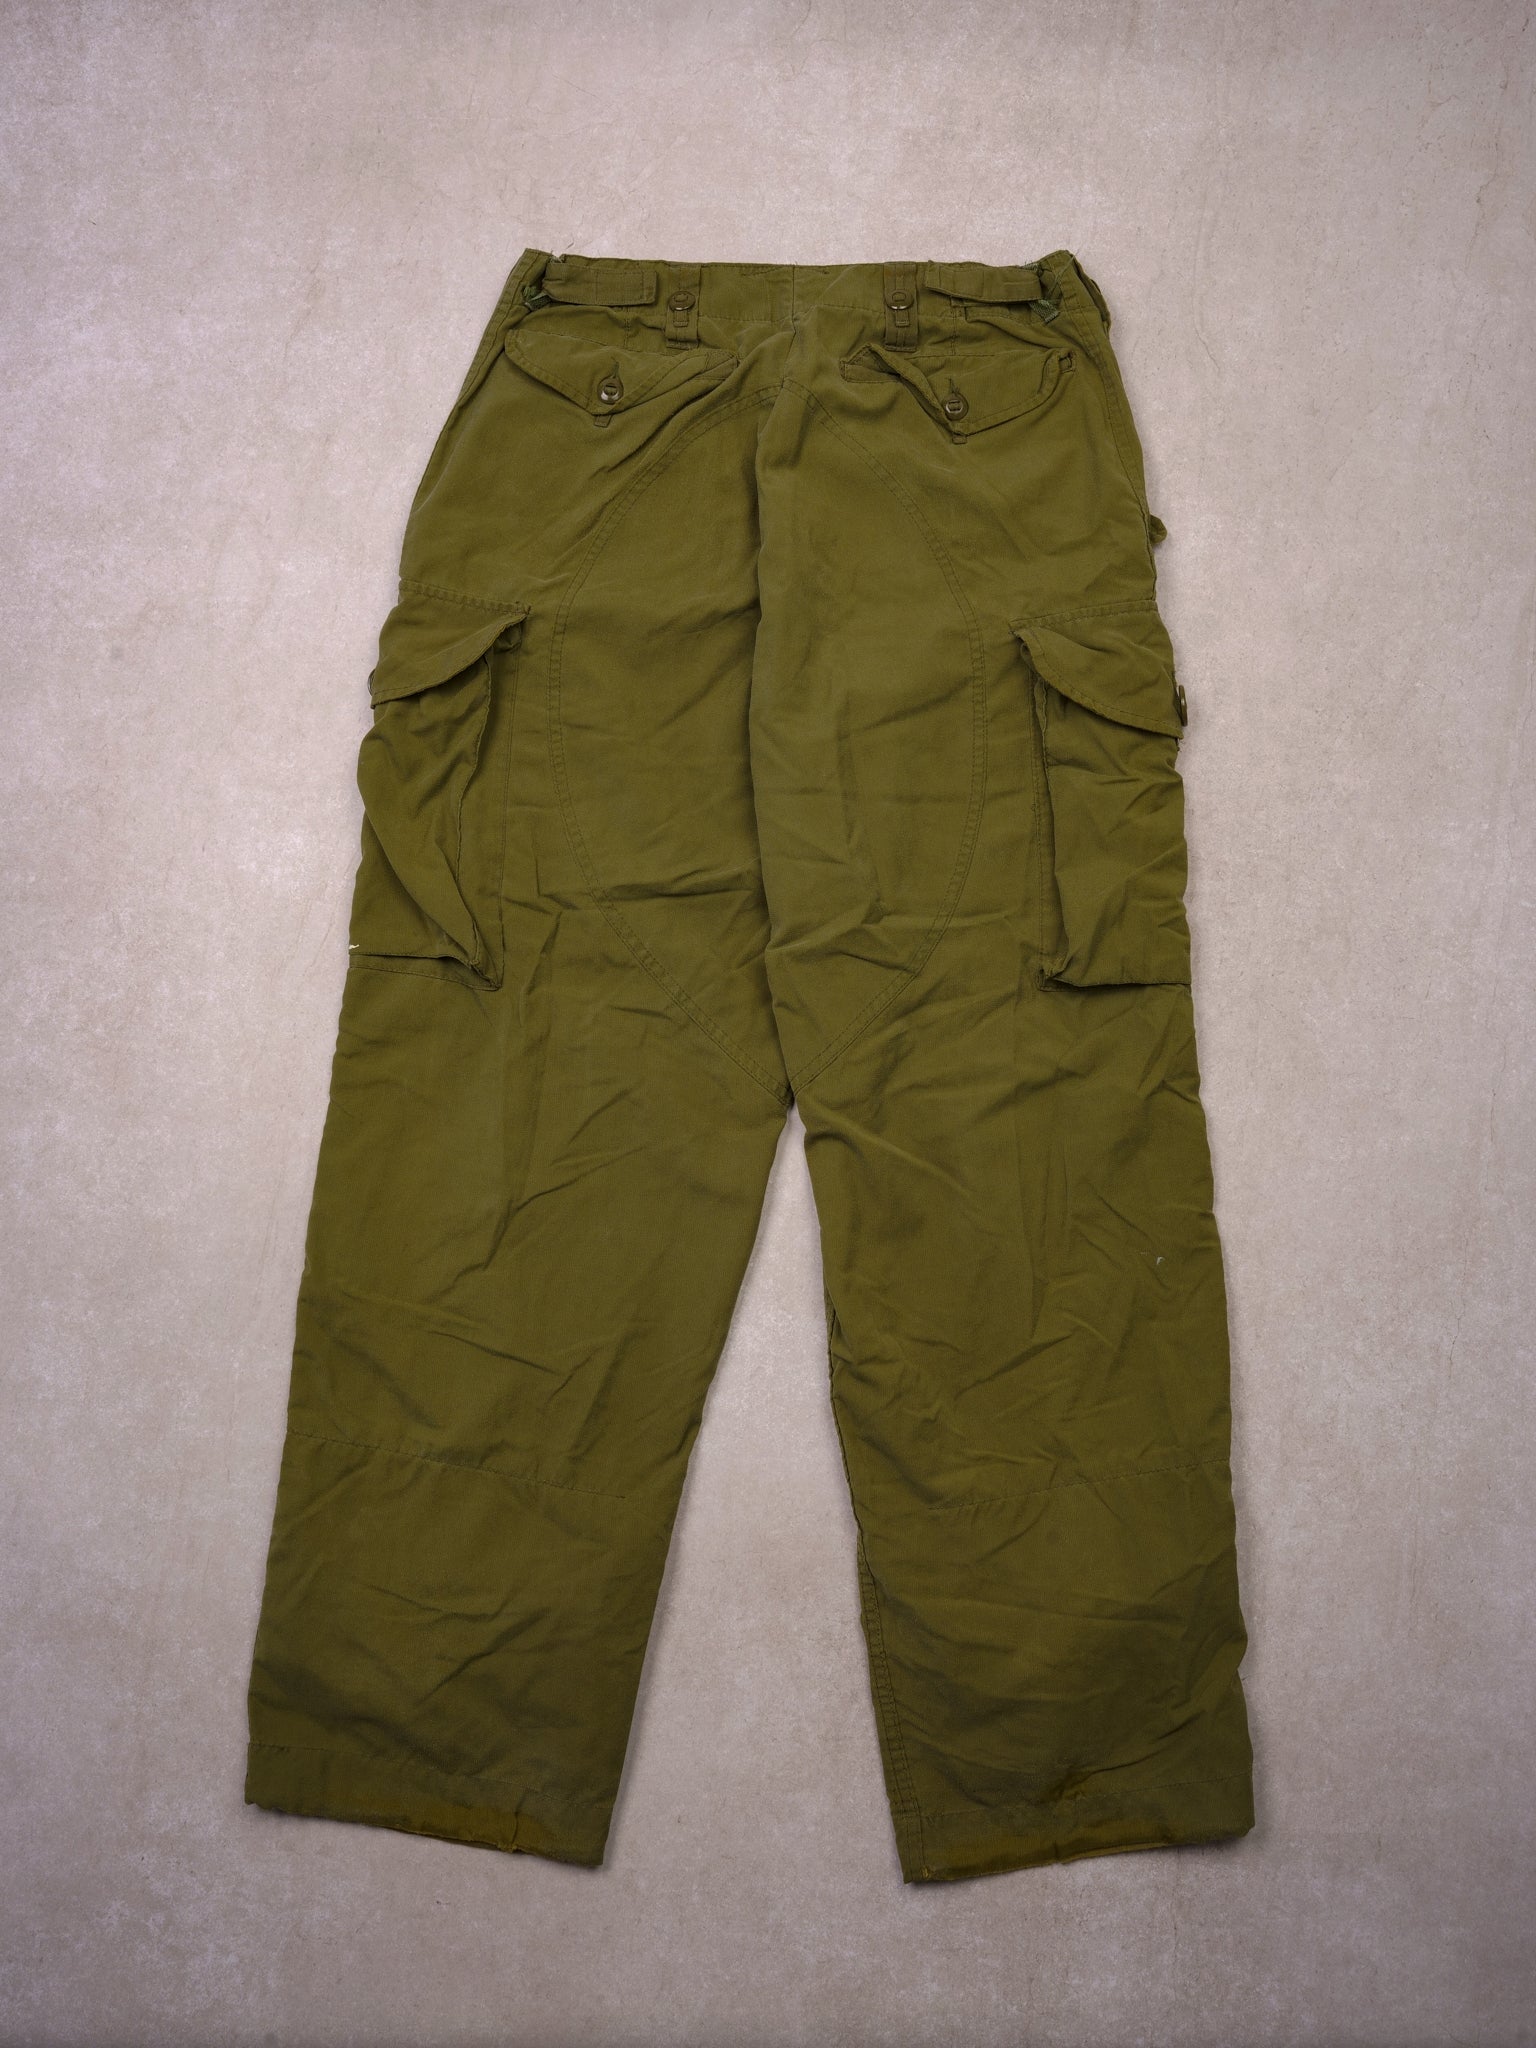 Vintage Army Combat Parachute Pants 3.0 (36x31)